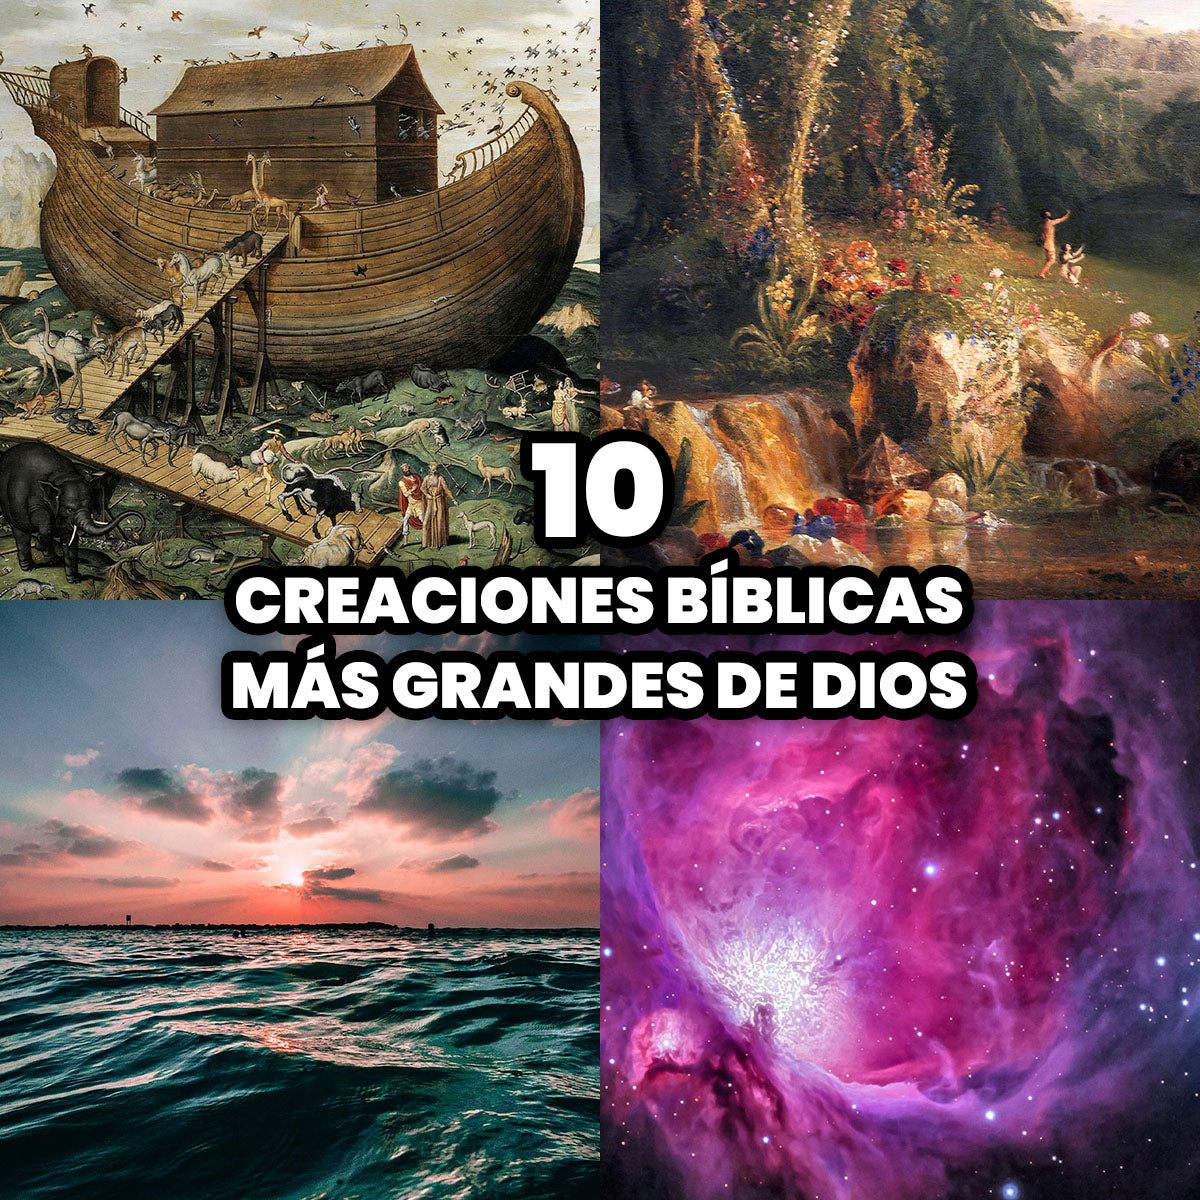 Las 10 Creaciones Bíblicas más Grandes de Dios